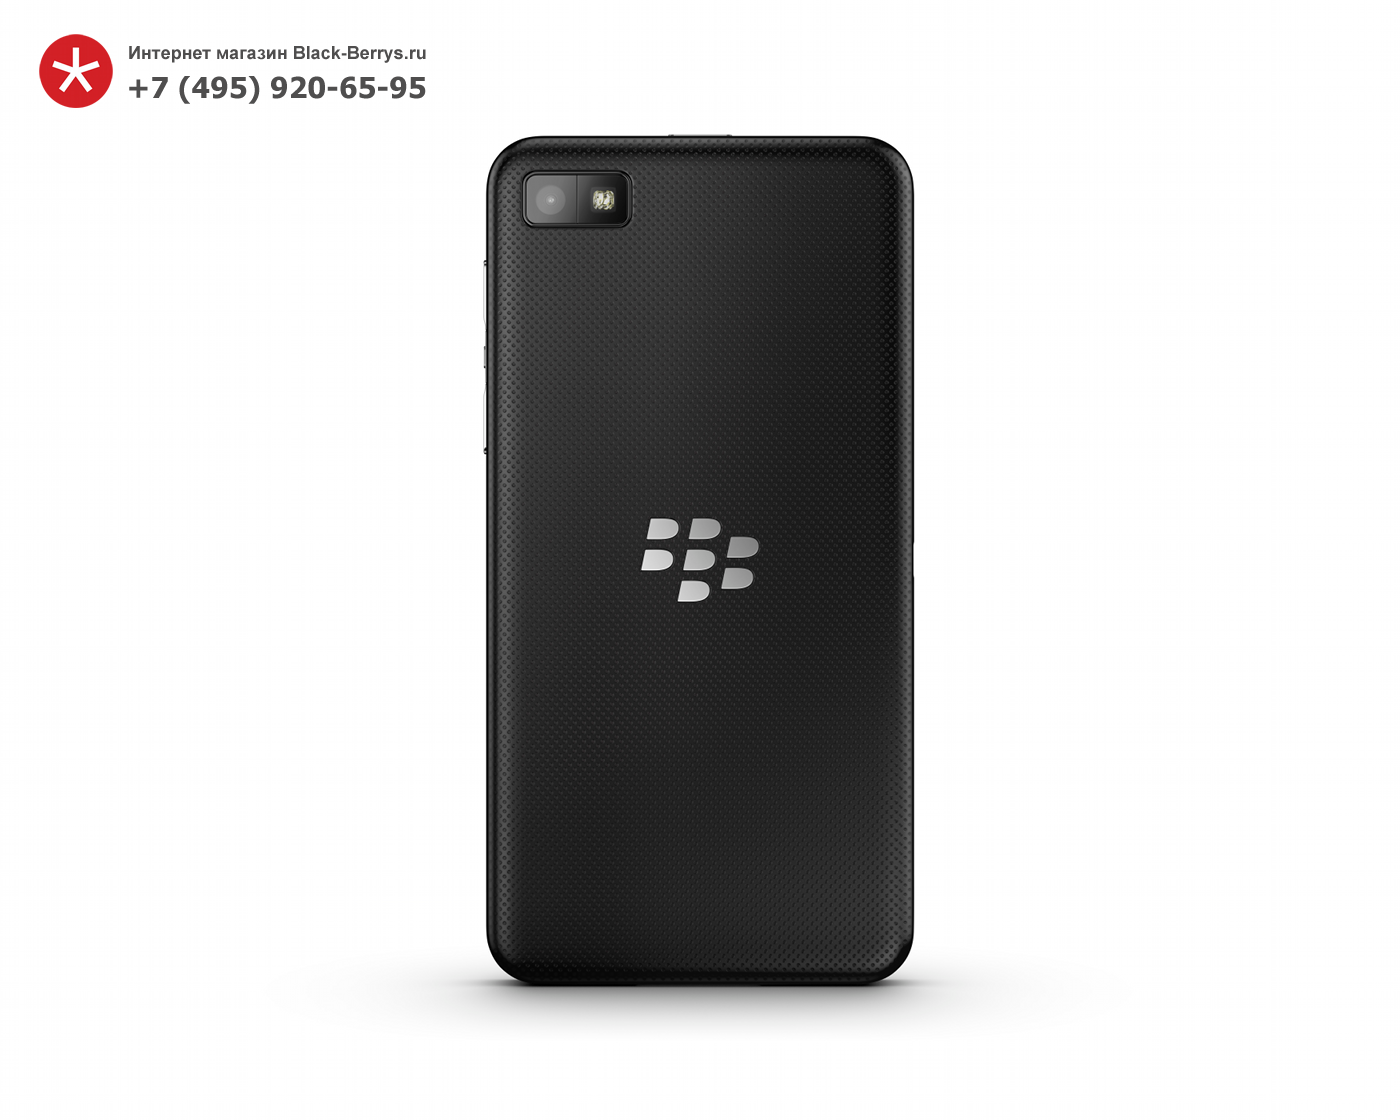 BlackBerry Z10 Black 3G + 4G (LTE)